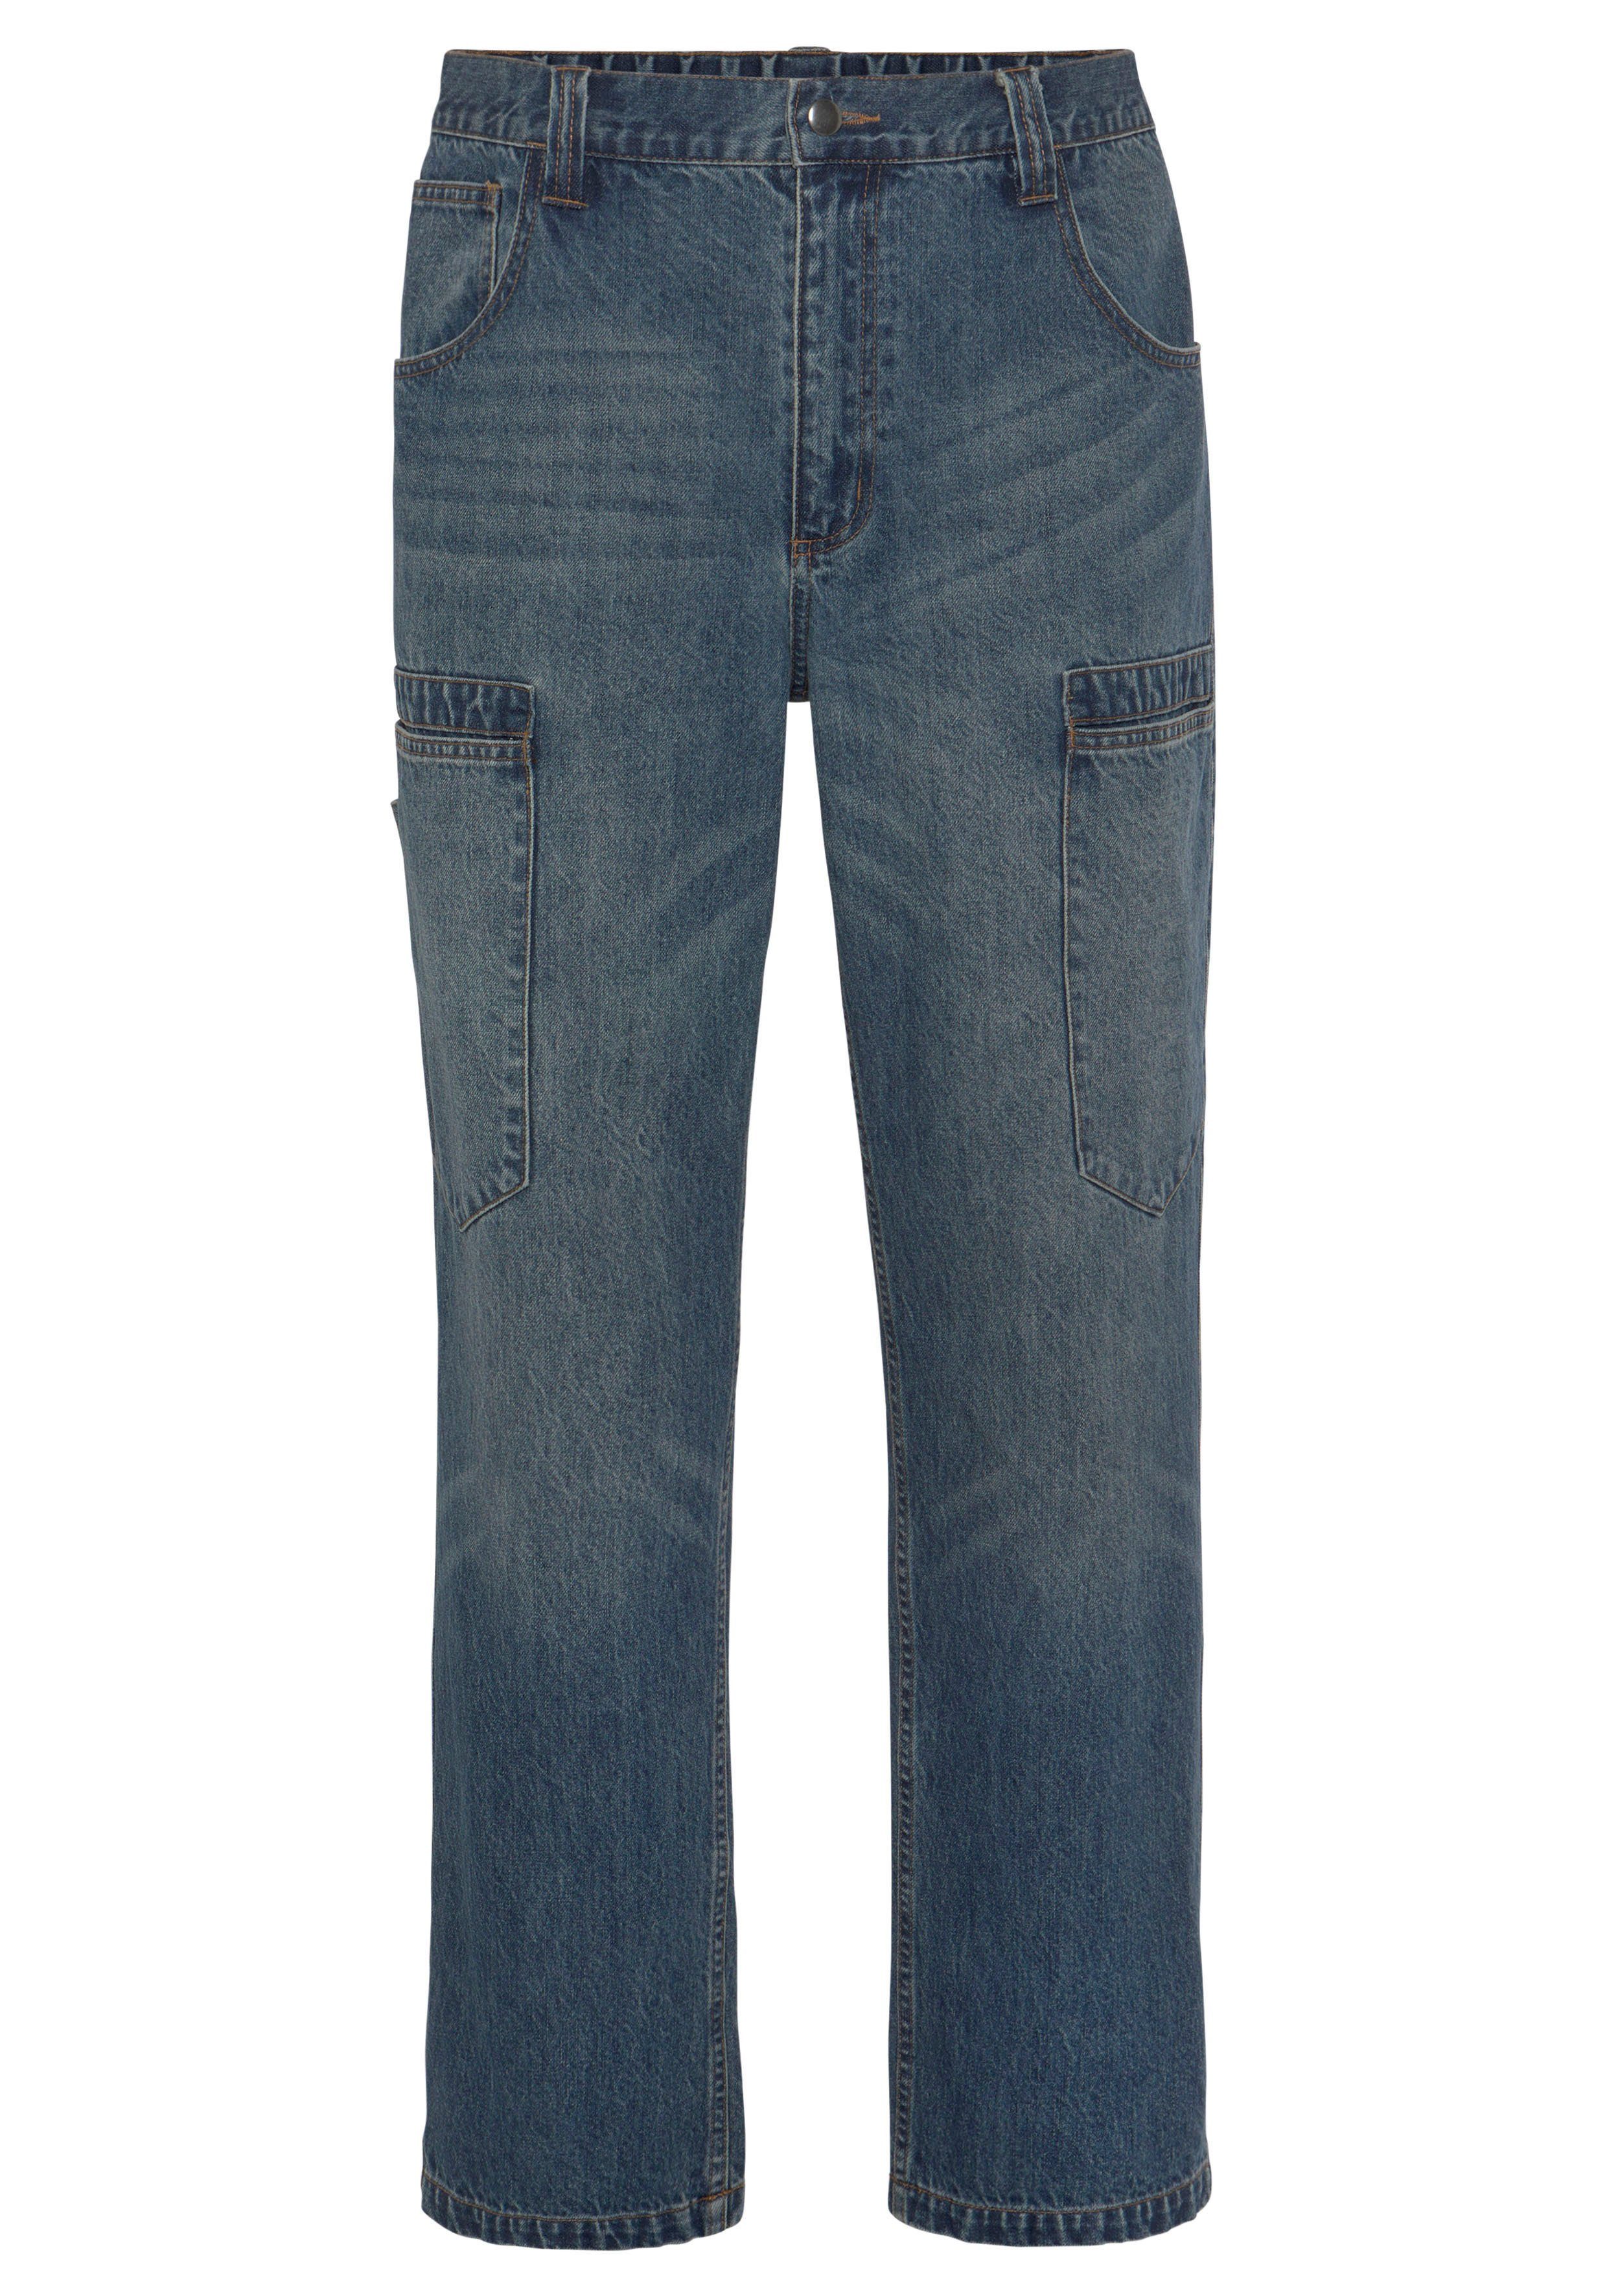 Bund, dehnbarem Country 6 mit Baumwolle, 100% (aus comfort Taschen fit) Jeans praktischen Arbeitshose robuster Jeansstoff, Northern Cargo mit